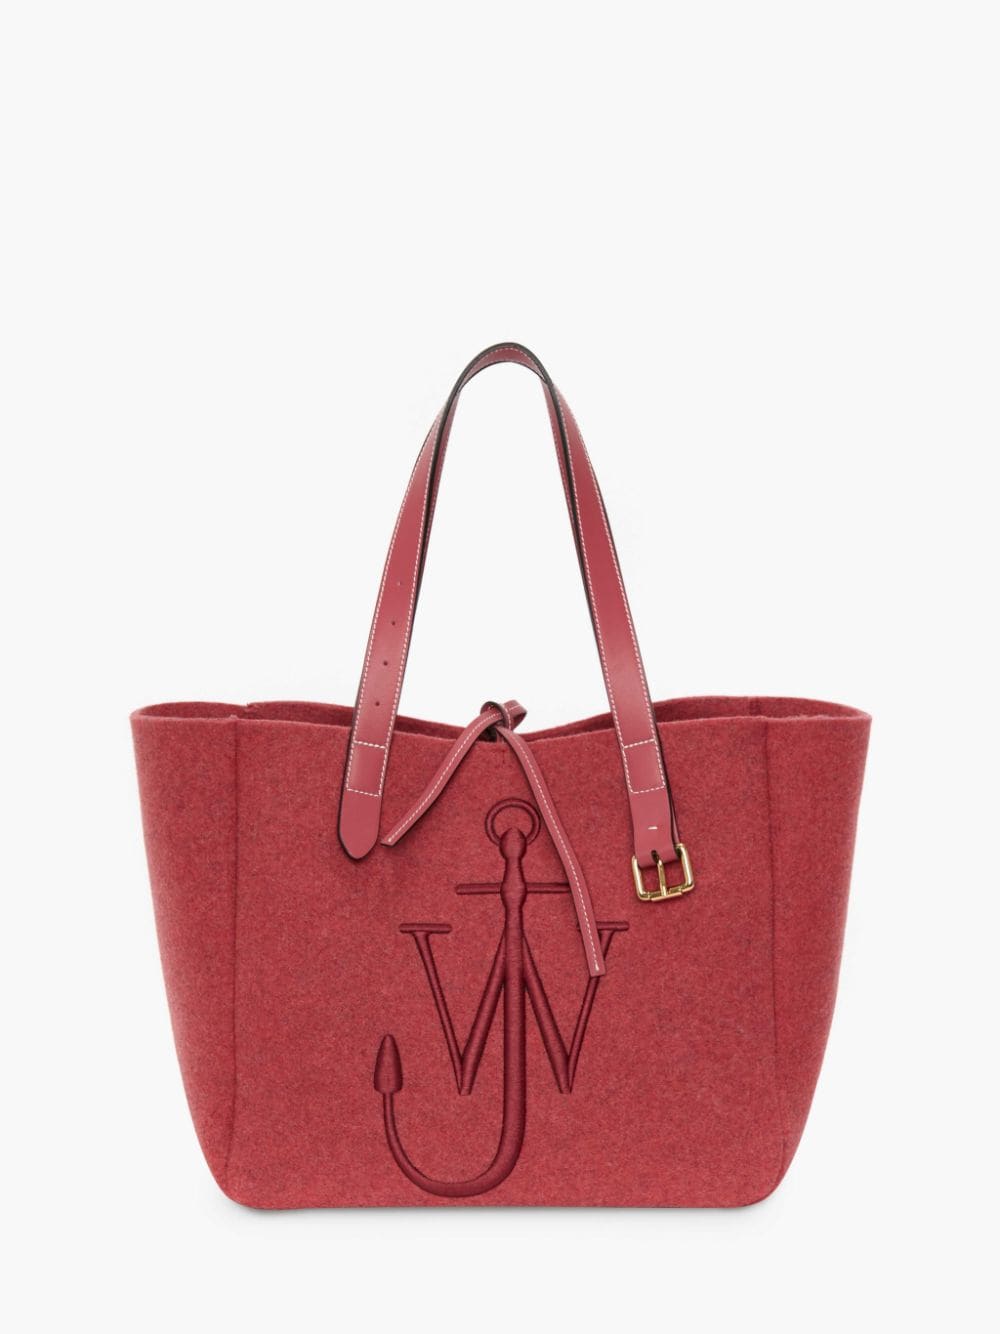 Louis Vuitton Tote Bag with Long Belt 30cm